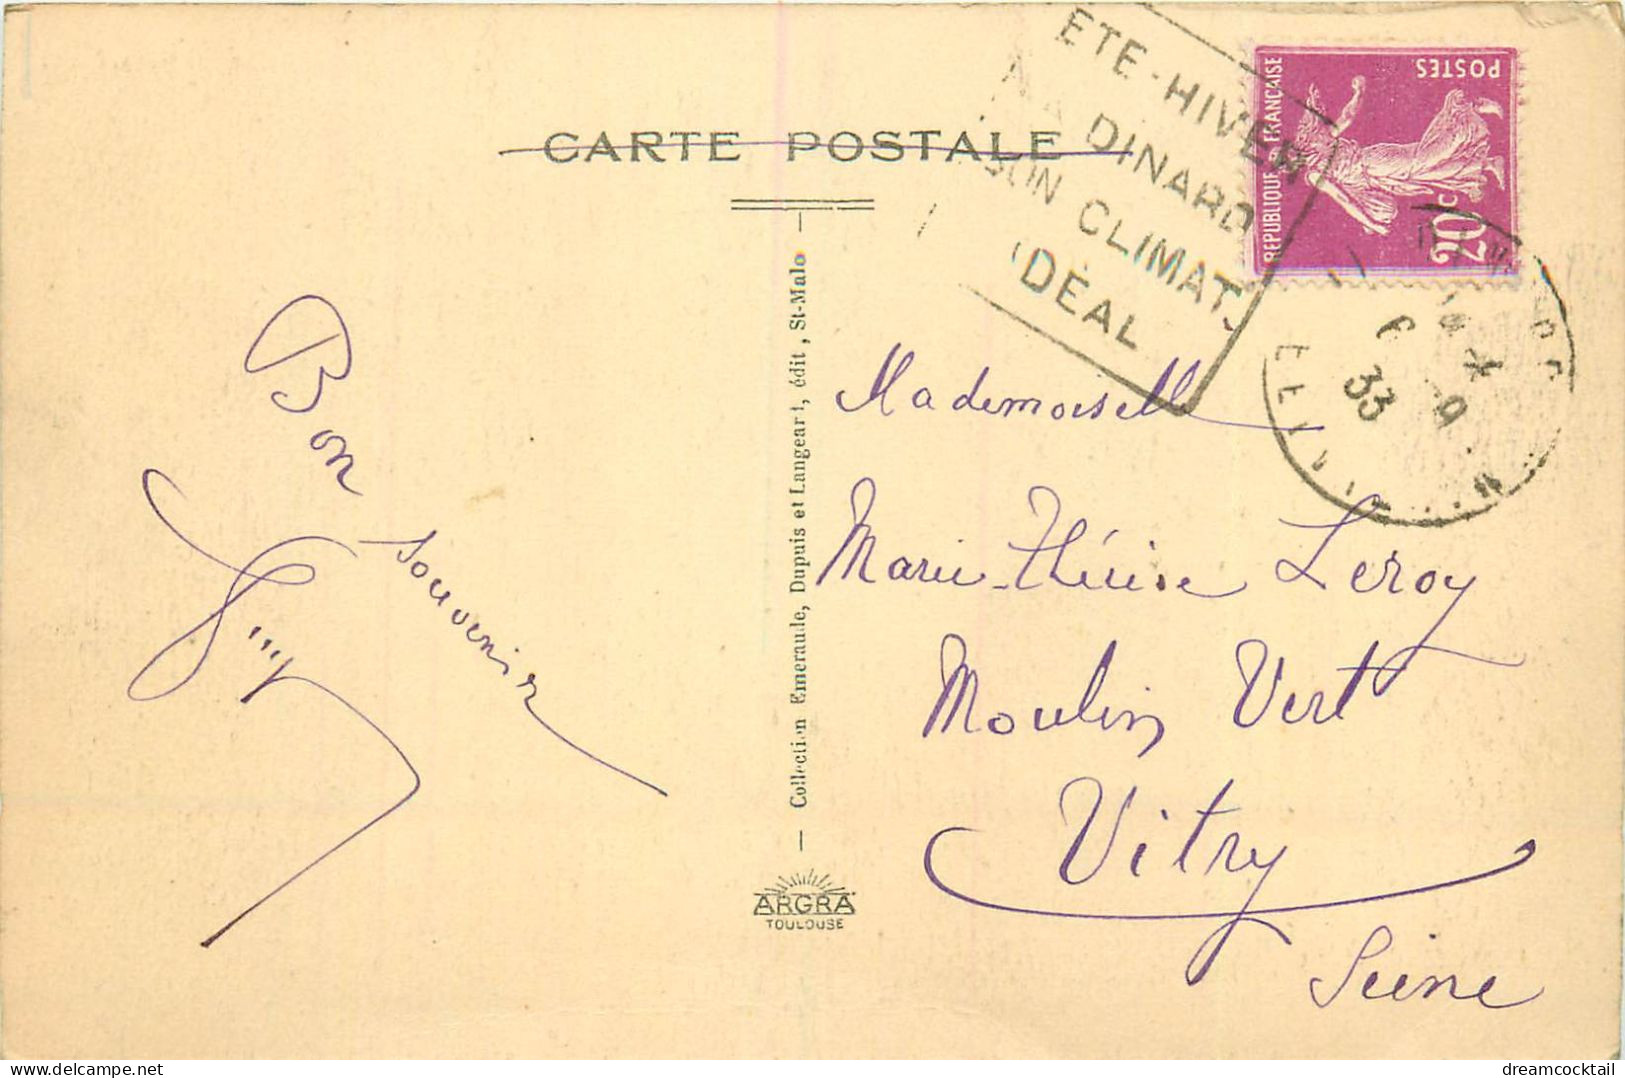 (S) Superbe LOT n°17 de 50 cartes postales anciennes Françaises régionalisme